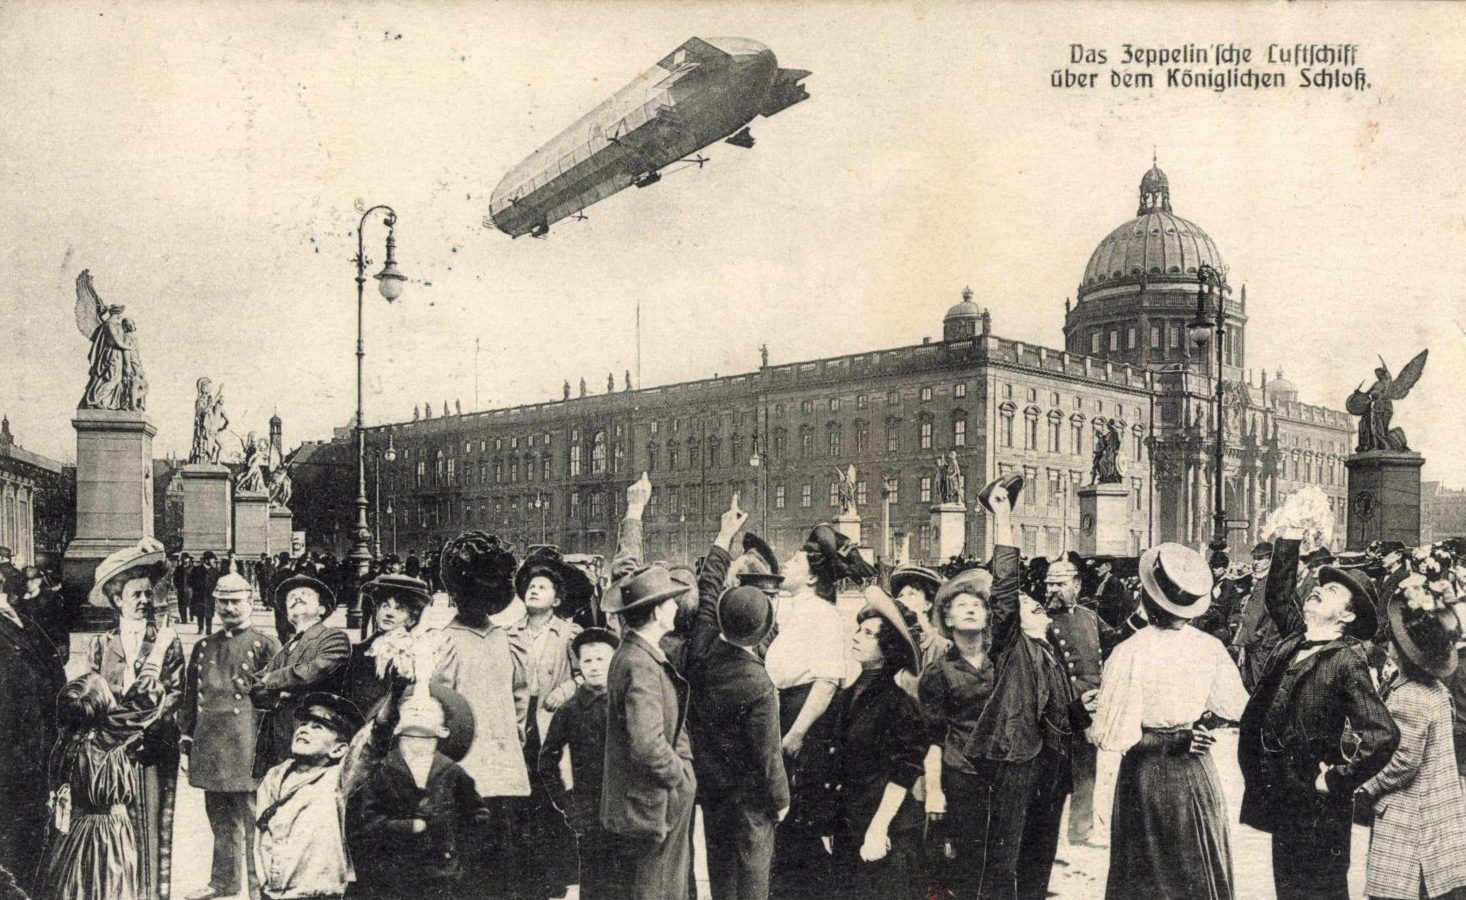 Berlin Postkarten: Zeppelinsches Luftschiff über dem königlichen Schloss.